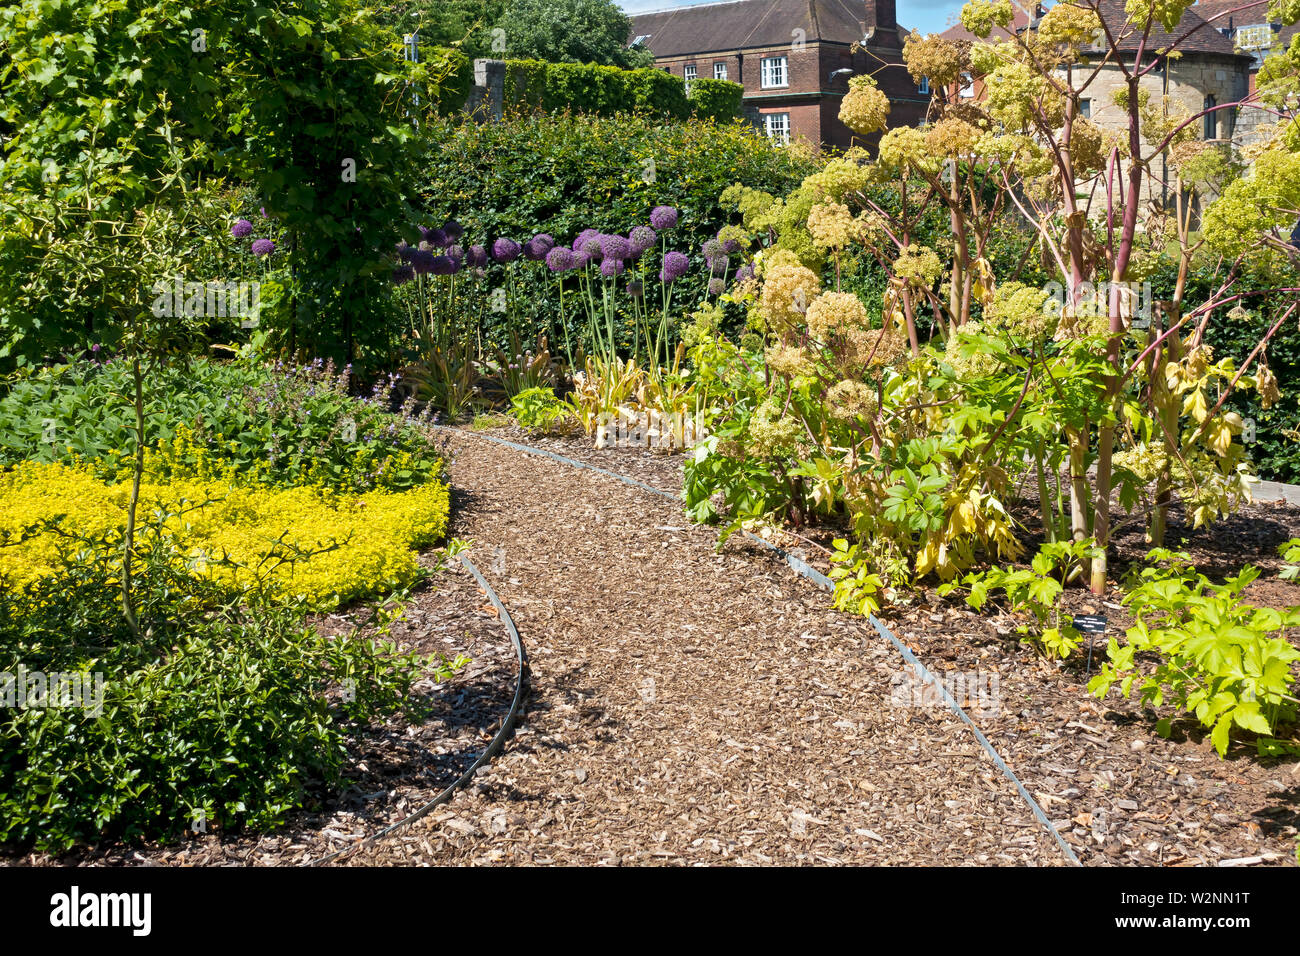 Chemin de jardin fait de chippings d'écorce avec angelica archangelica et des alliums croissant dans les frontières dans un jardin de chalet été Angleterre Royaume-Uni Grande-Bretagne Banque D'Images